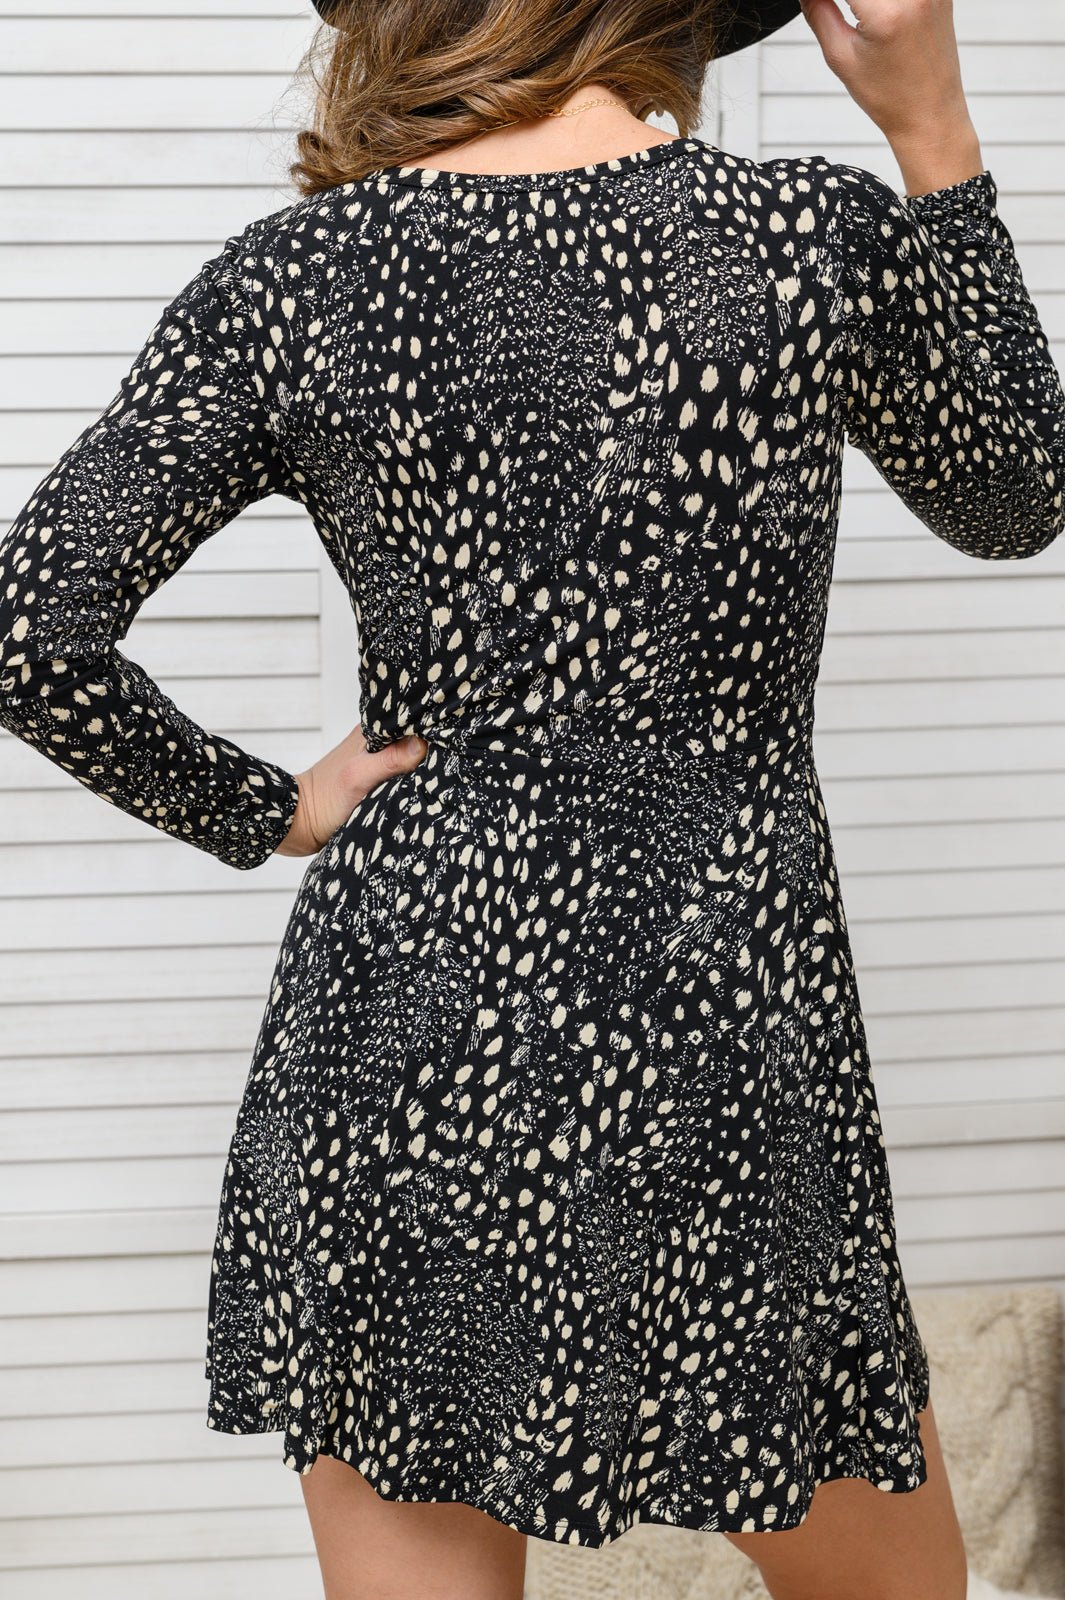 Fay Long Sleeve V Neck Skort Dress - Happily Ever Atchison Shop Co.